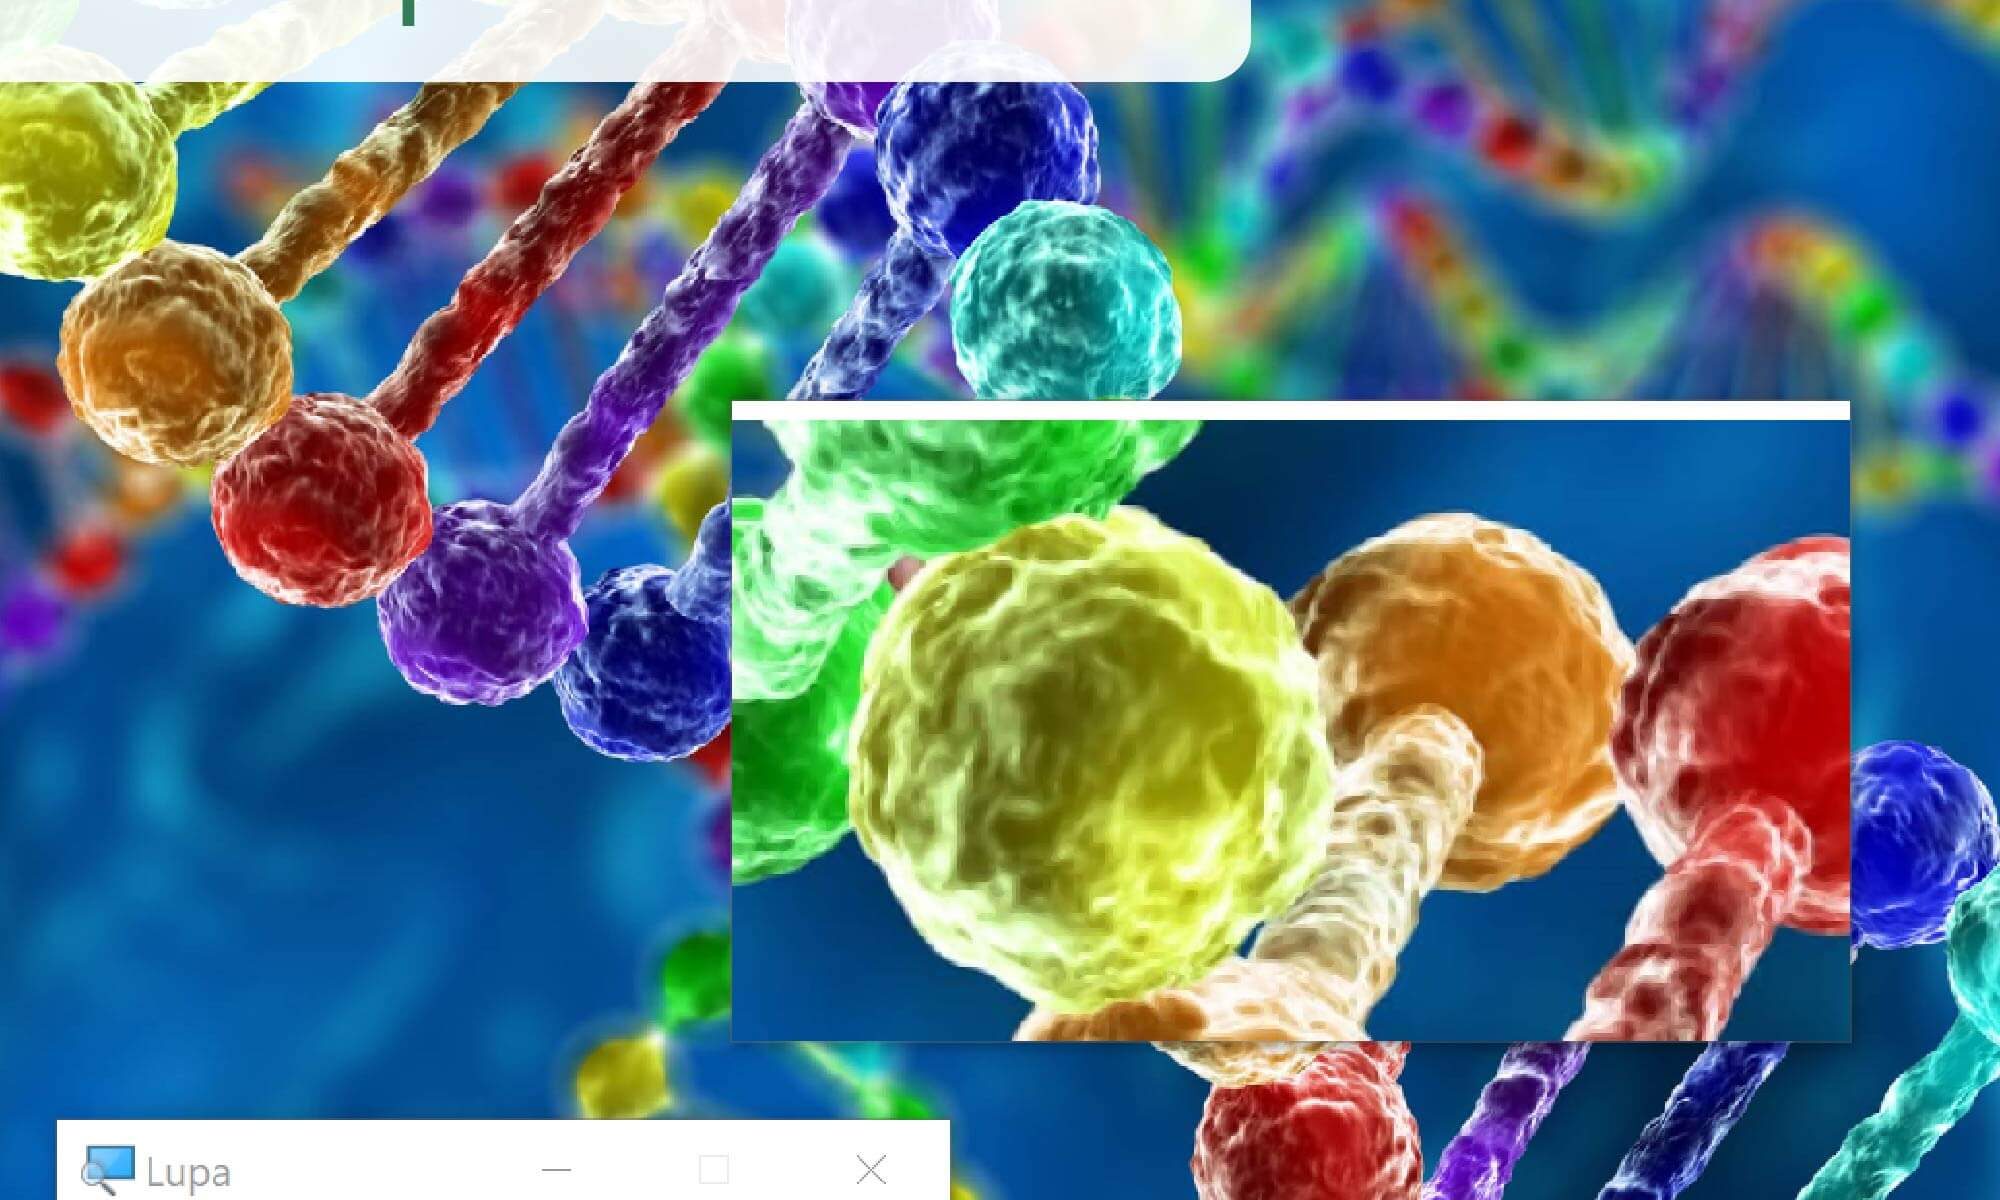 imagem ilustrativa, mostrando a lupa do windows sobre uma imagem de DNA.